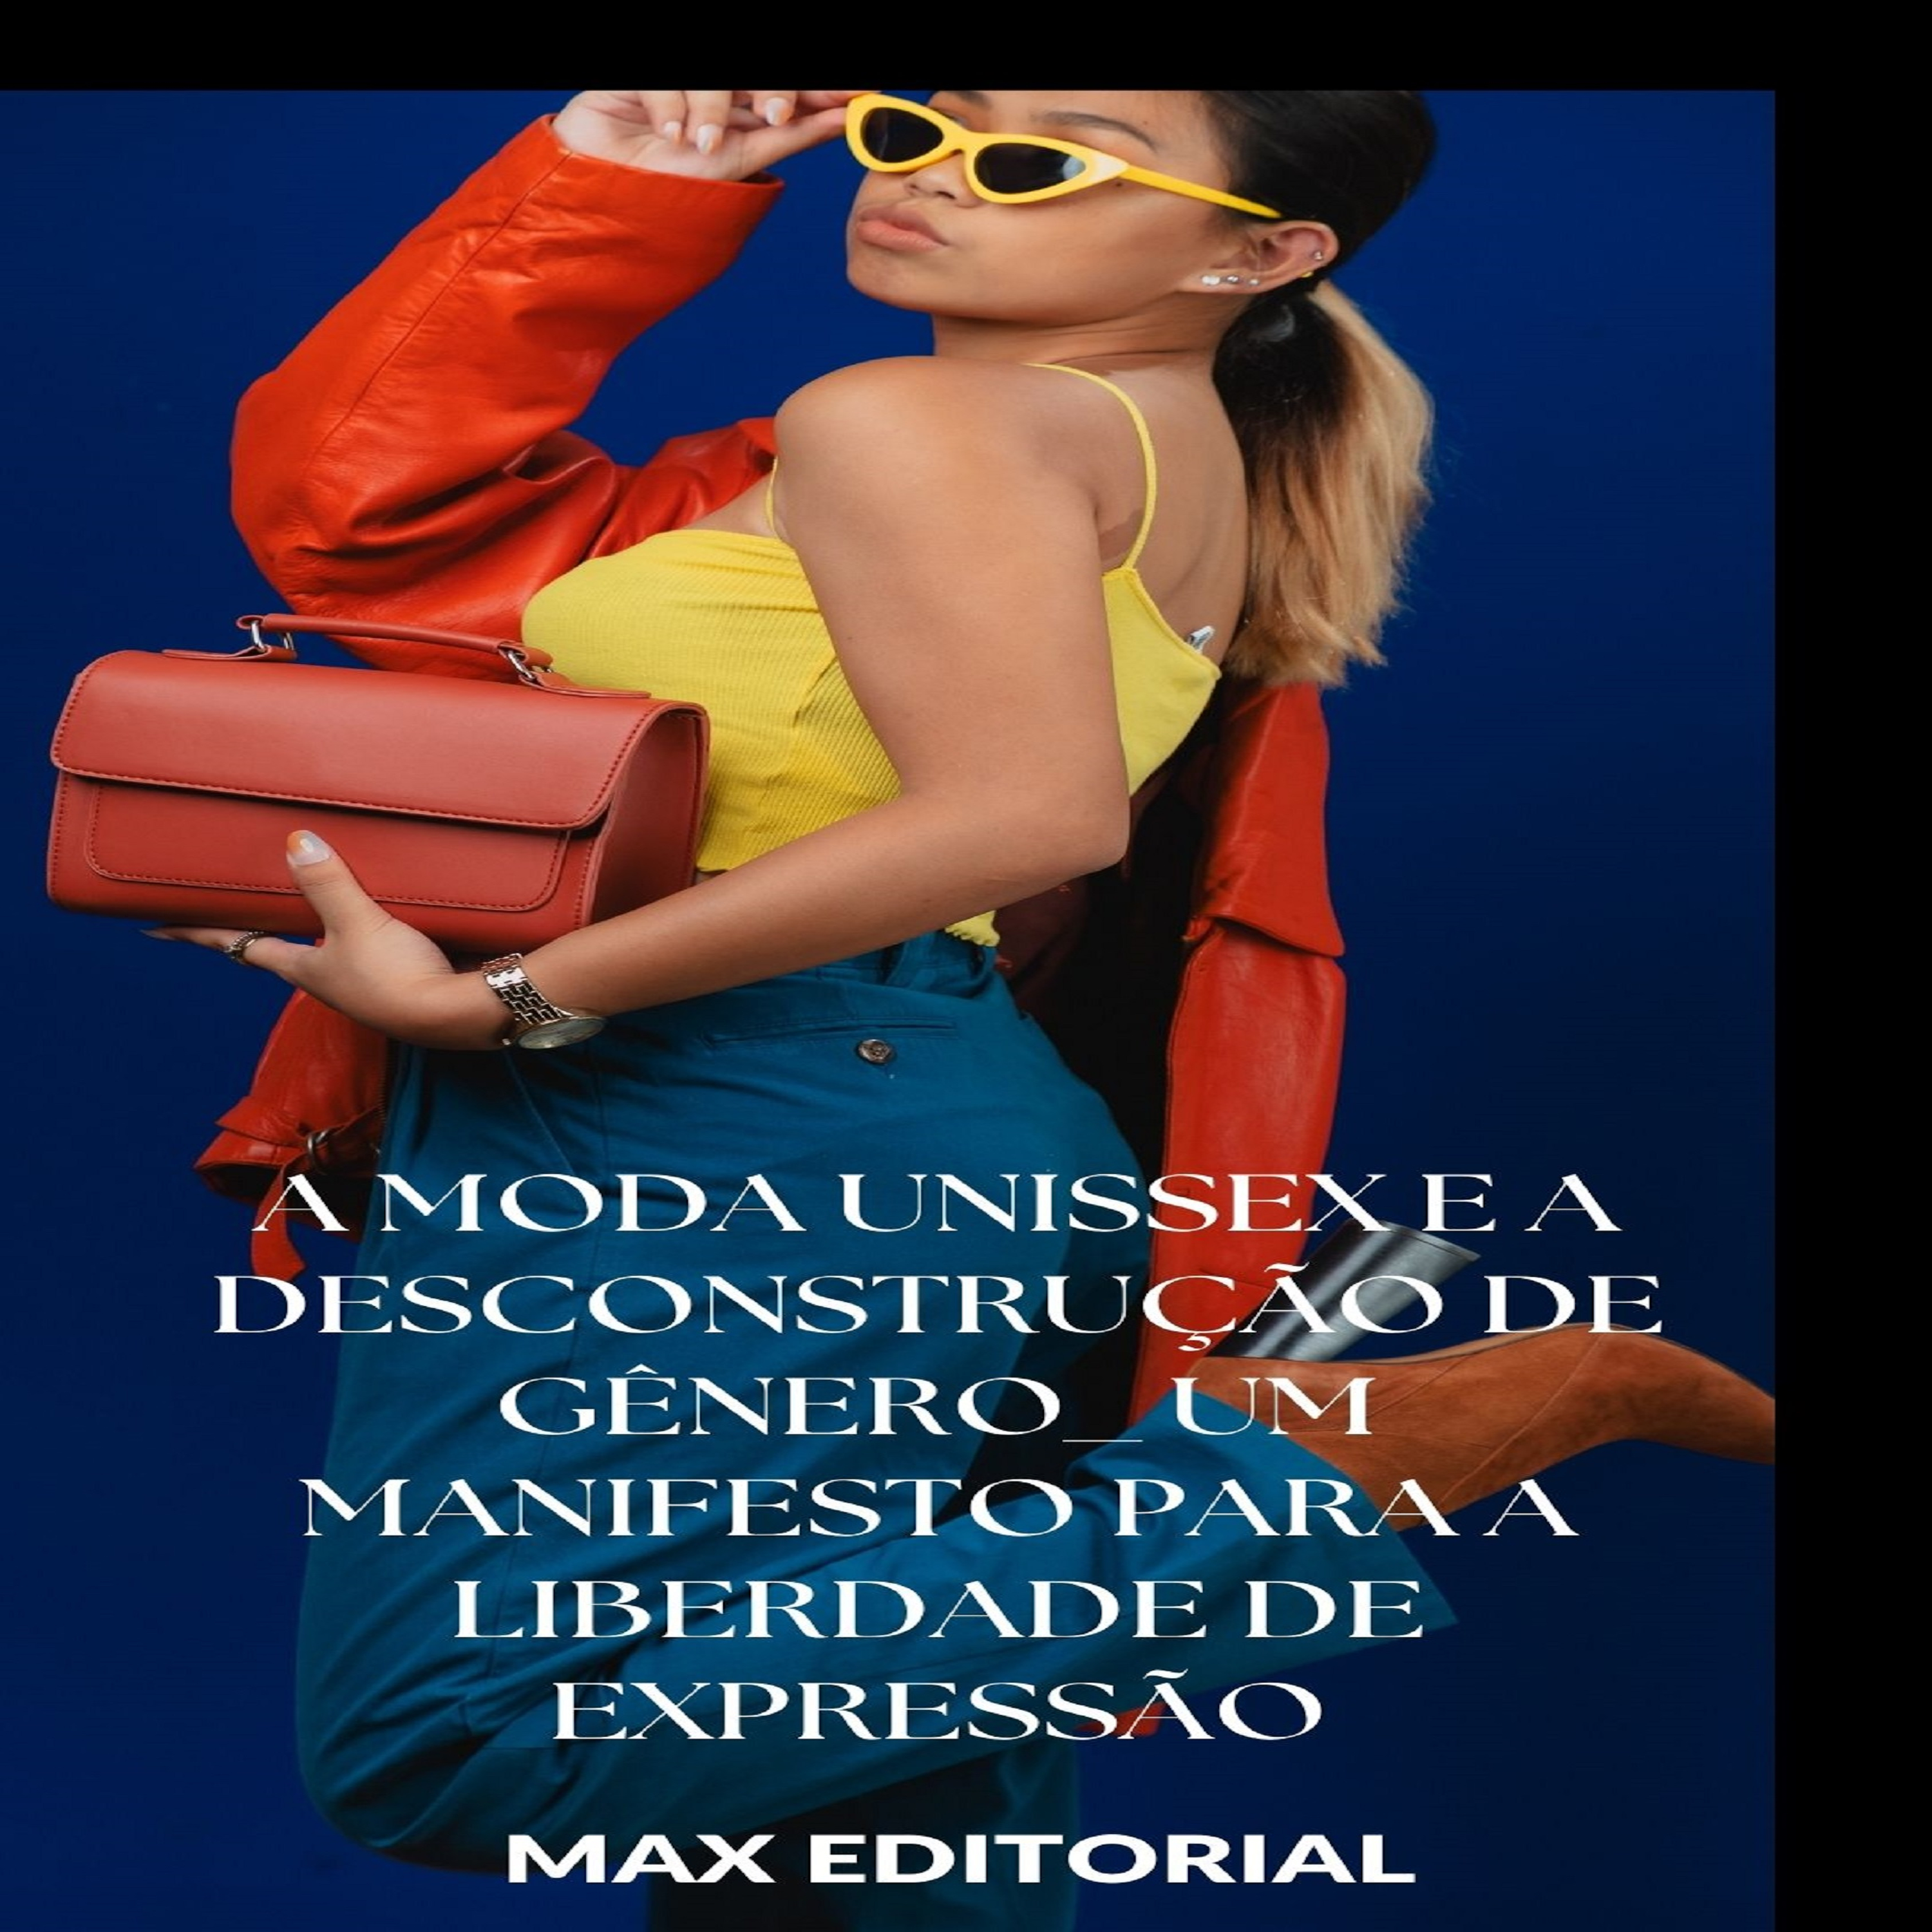 A Moda Unissex e a Desconstrução de Gênero: Um Manifesto para a Liberdade de Expressão